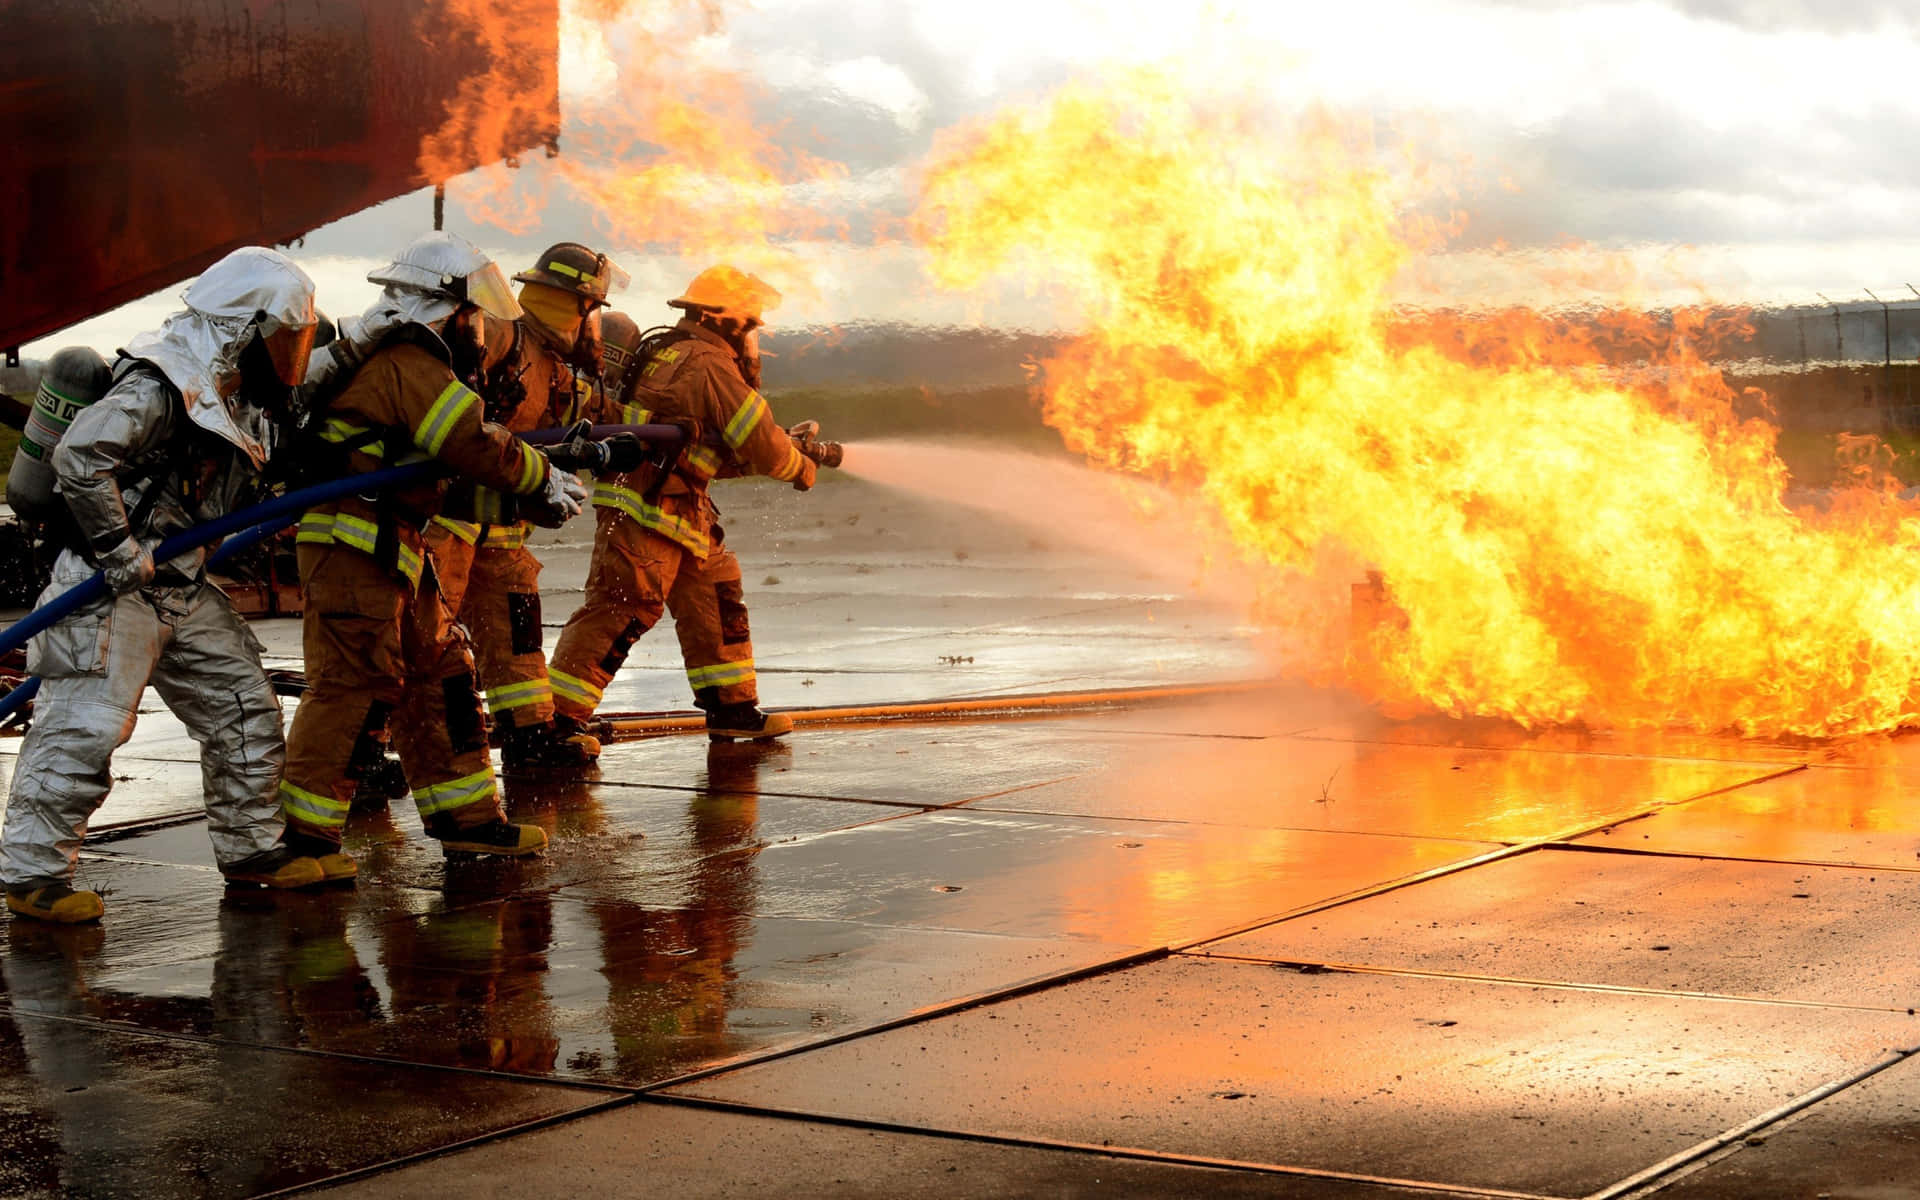 Einegruppe Von Feuerwehrleuten Kämpft Gegen Ein Feuer. Wallpaper